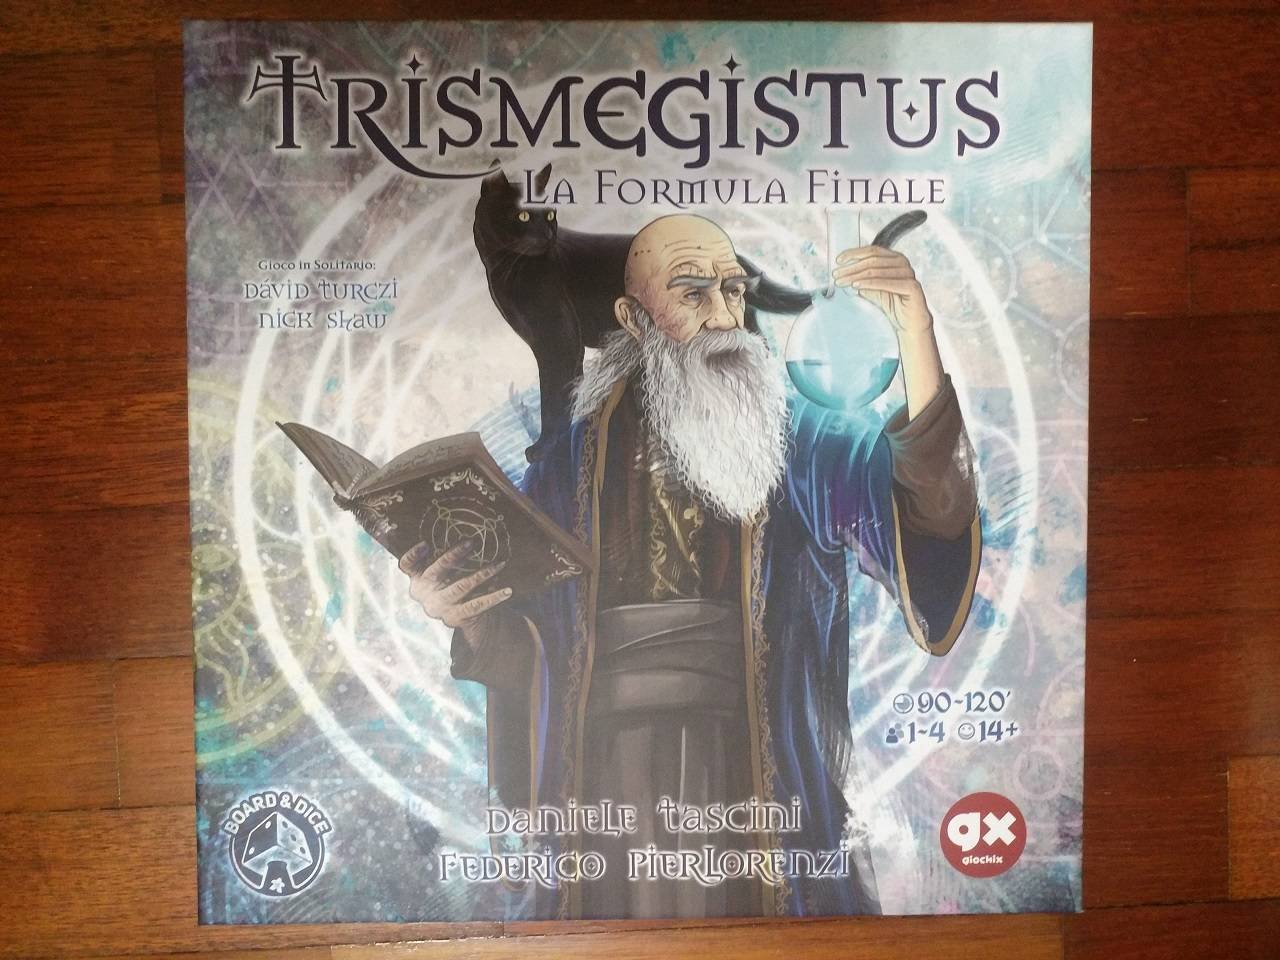 Immagine di Trismegistus - La Formula Finale, la recensione: chi sarà il miglior alchimista?